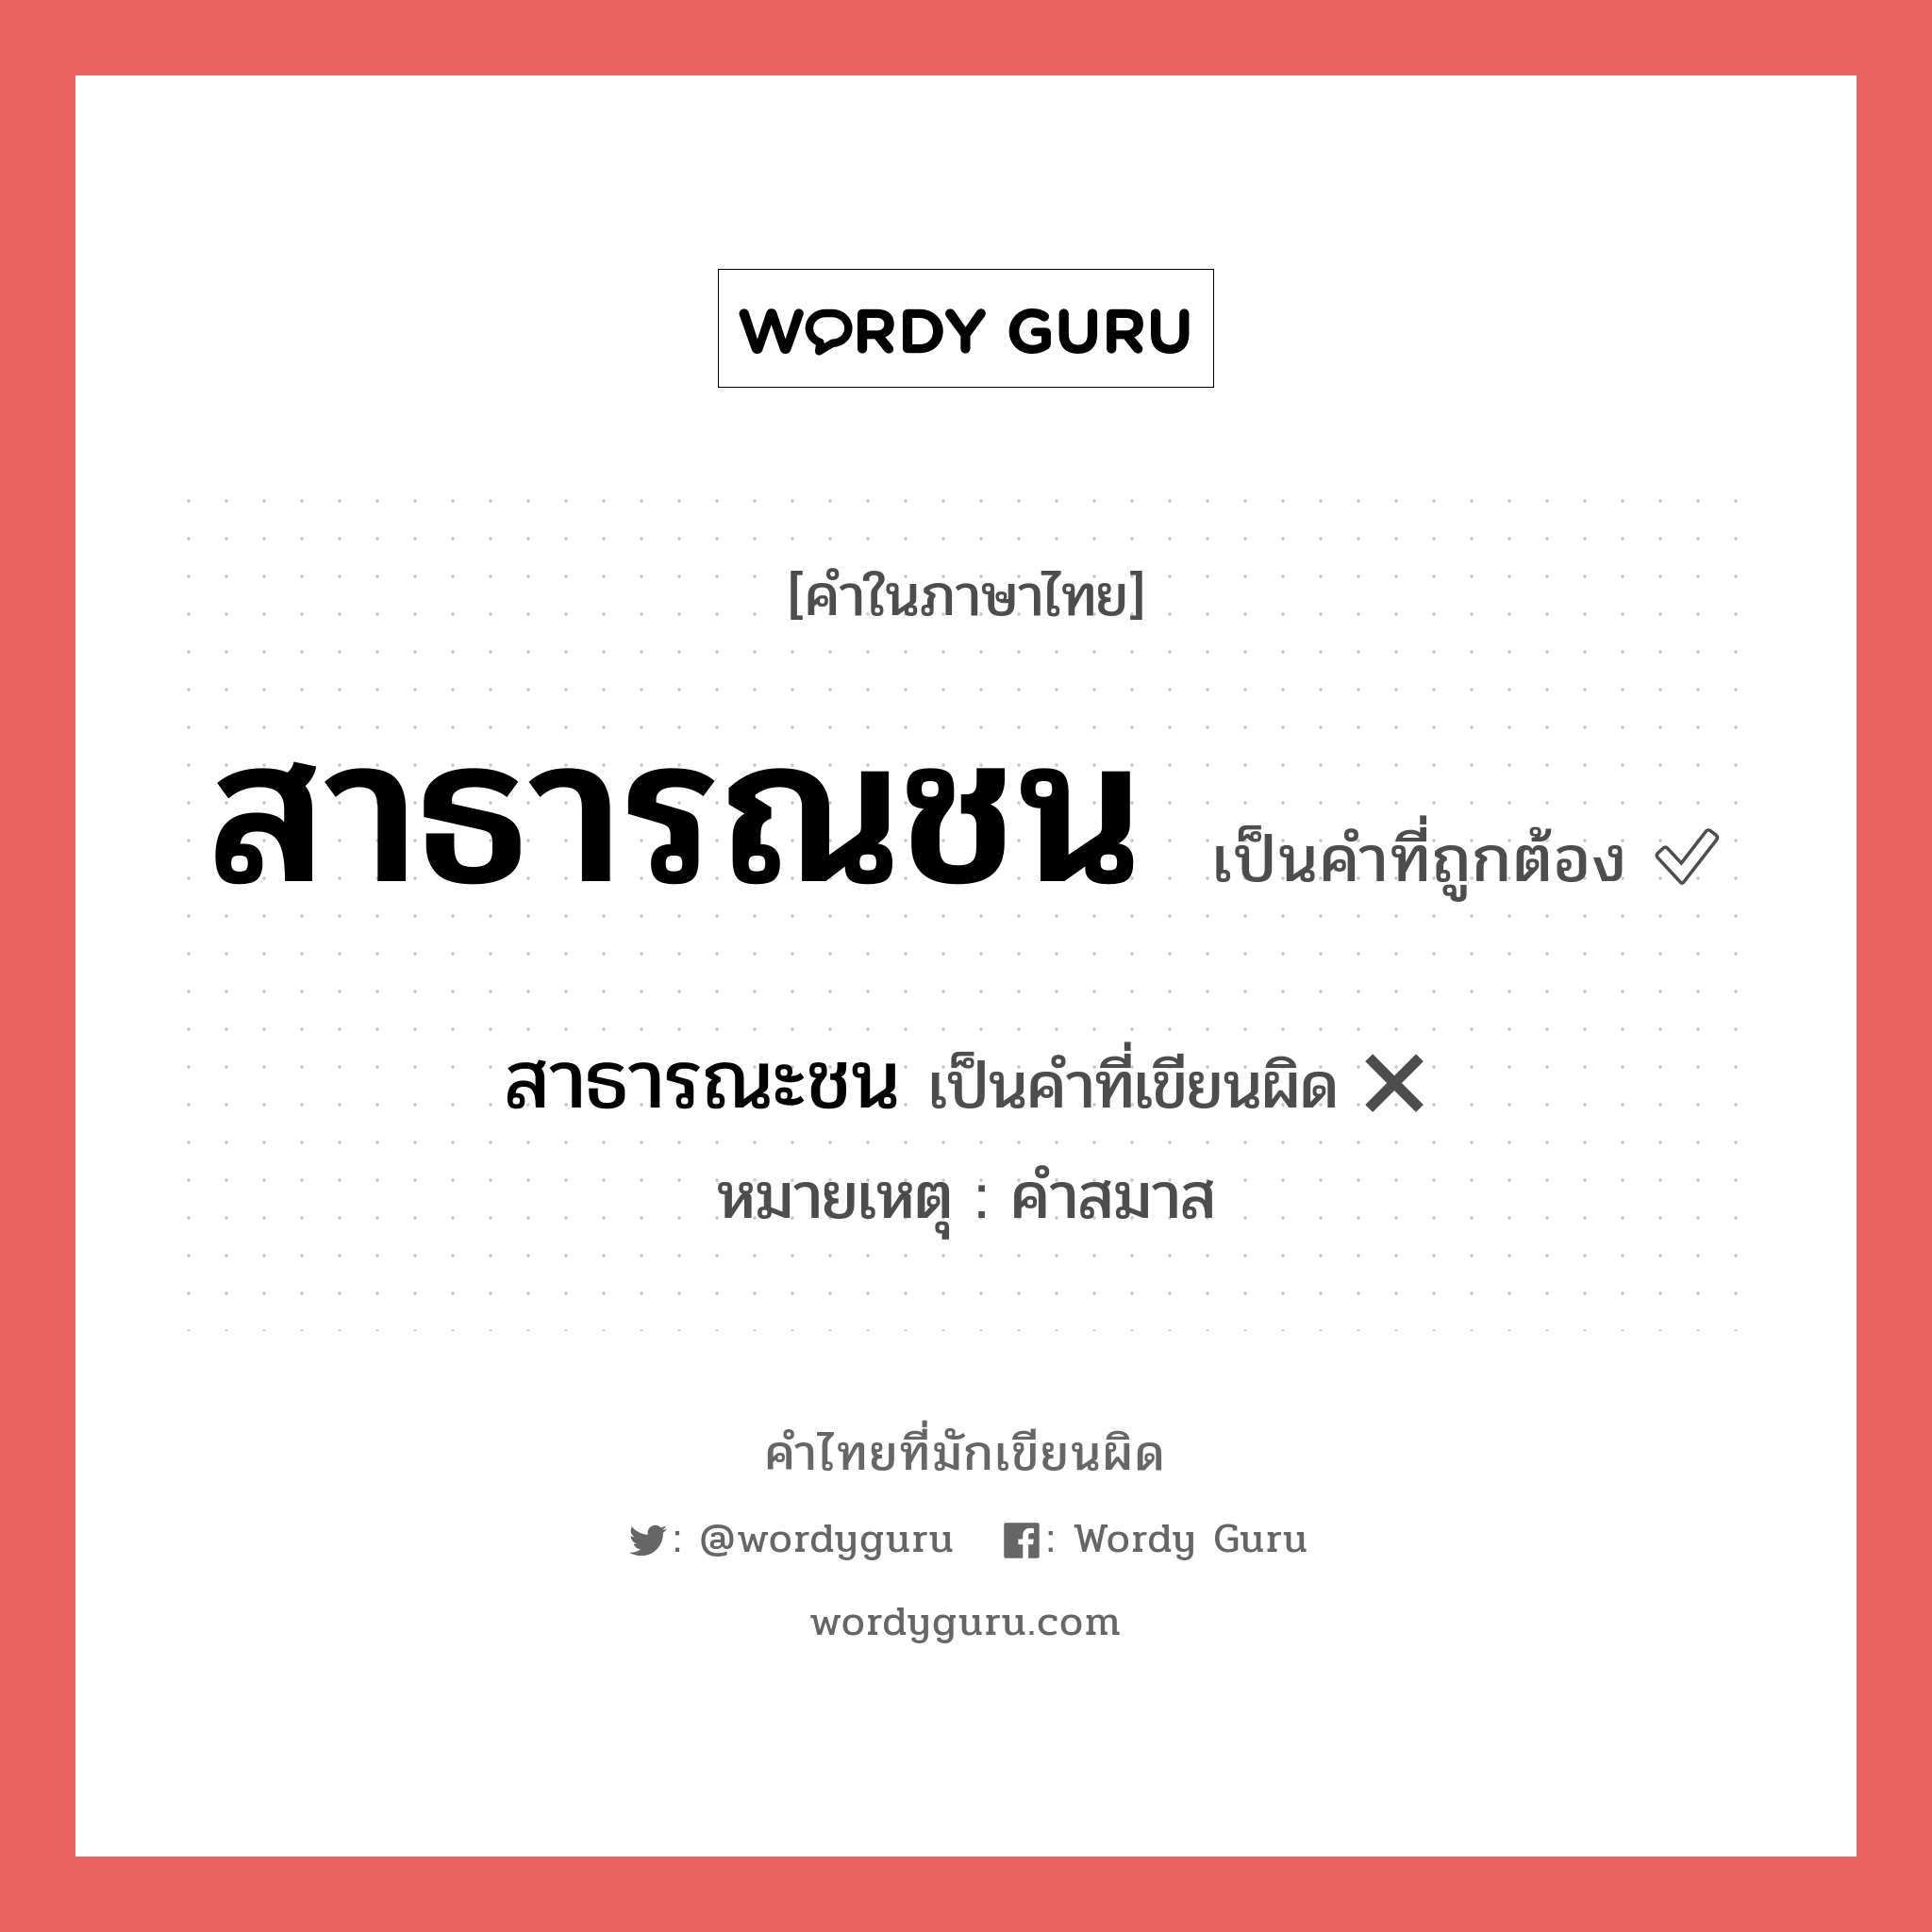 สาธารณะชน หรือ สาธารณชน คำไหนเขียนถูก?, คำในภาษาไทยที่มักเขียนผิด สาธารณะชน คำที่ผิด ❌ สาธารณชน หมายเหตุ คำสมาส